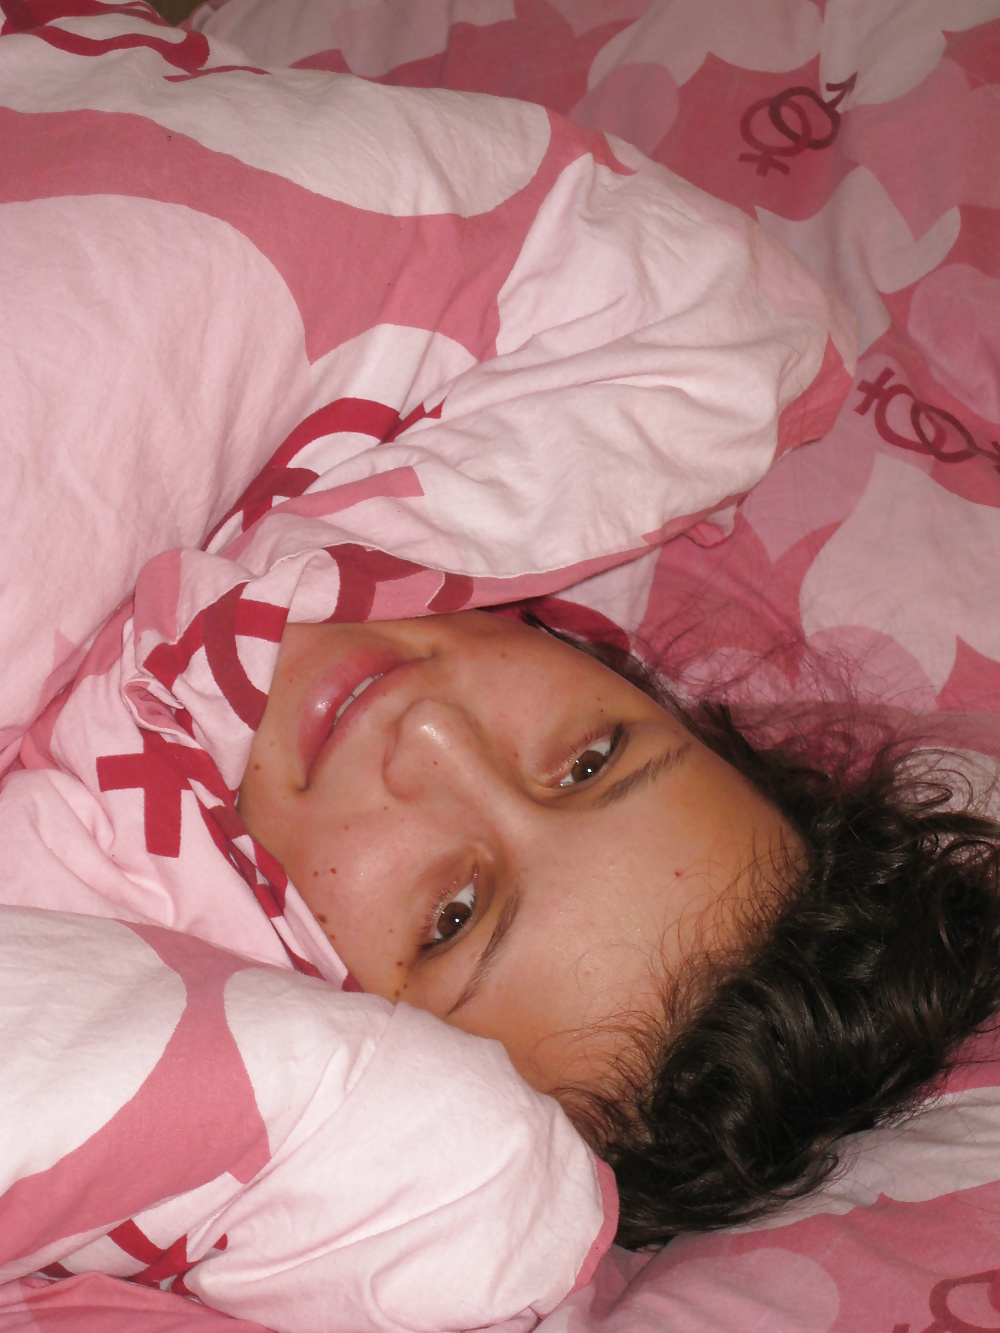 Цыпочка в черных трусиках валяется на розовой постели 9 фотография